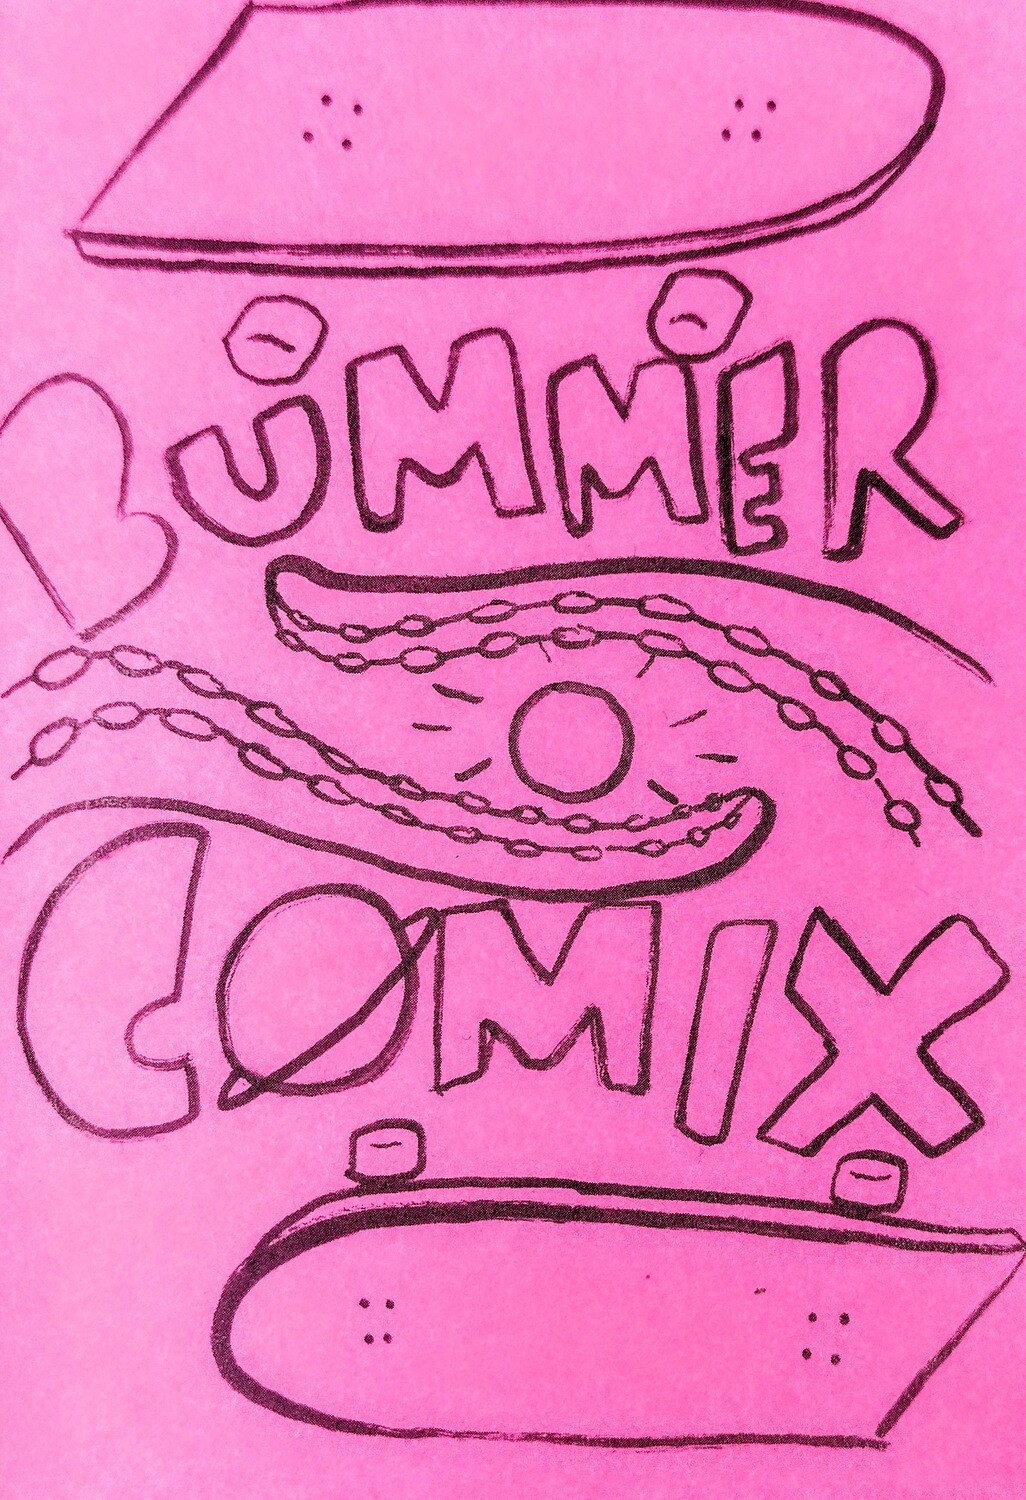 Bummer Comix - Zine by Bummer Comix